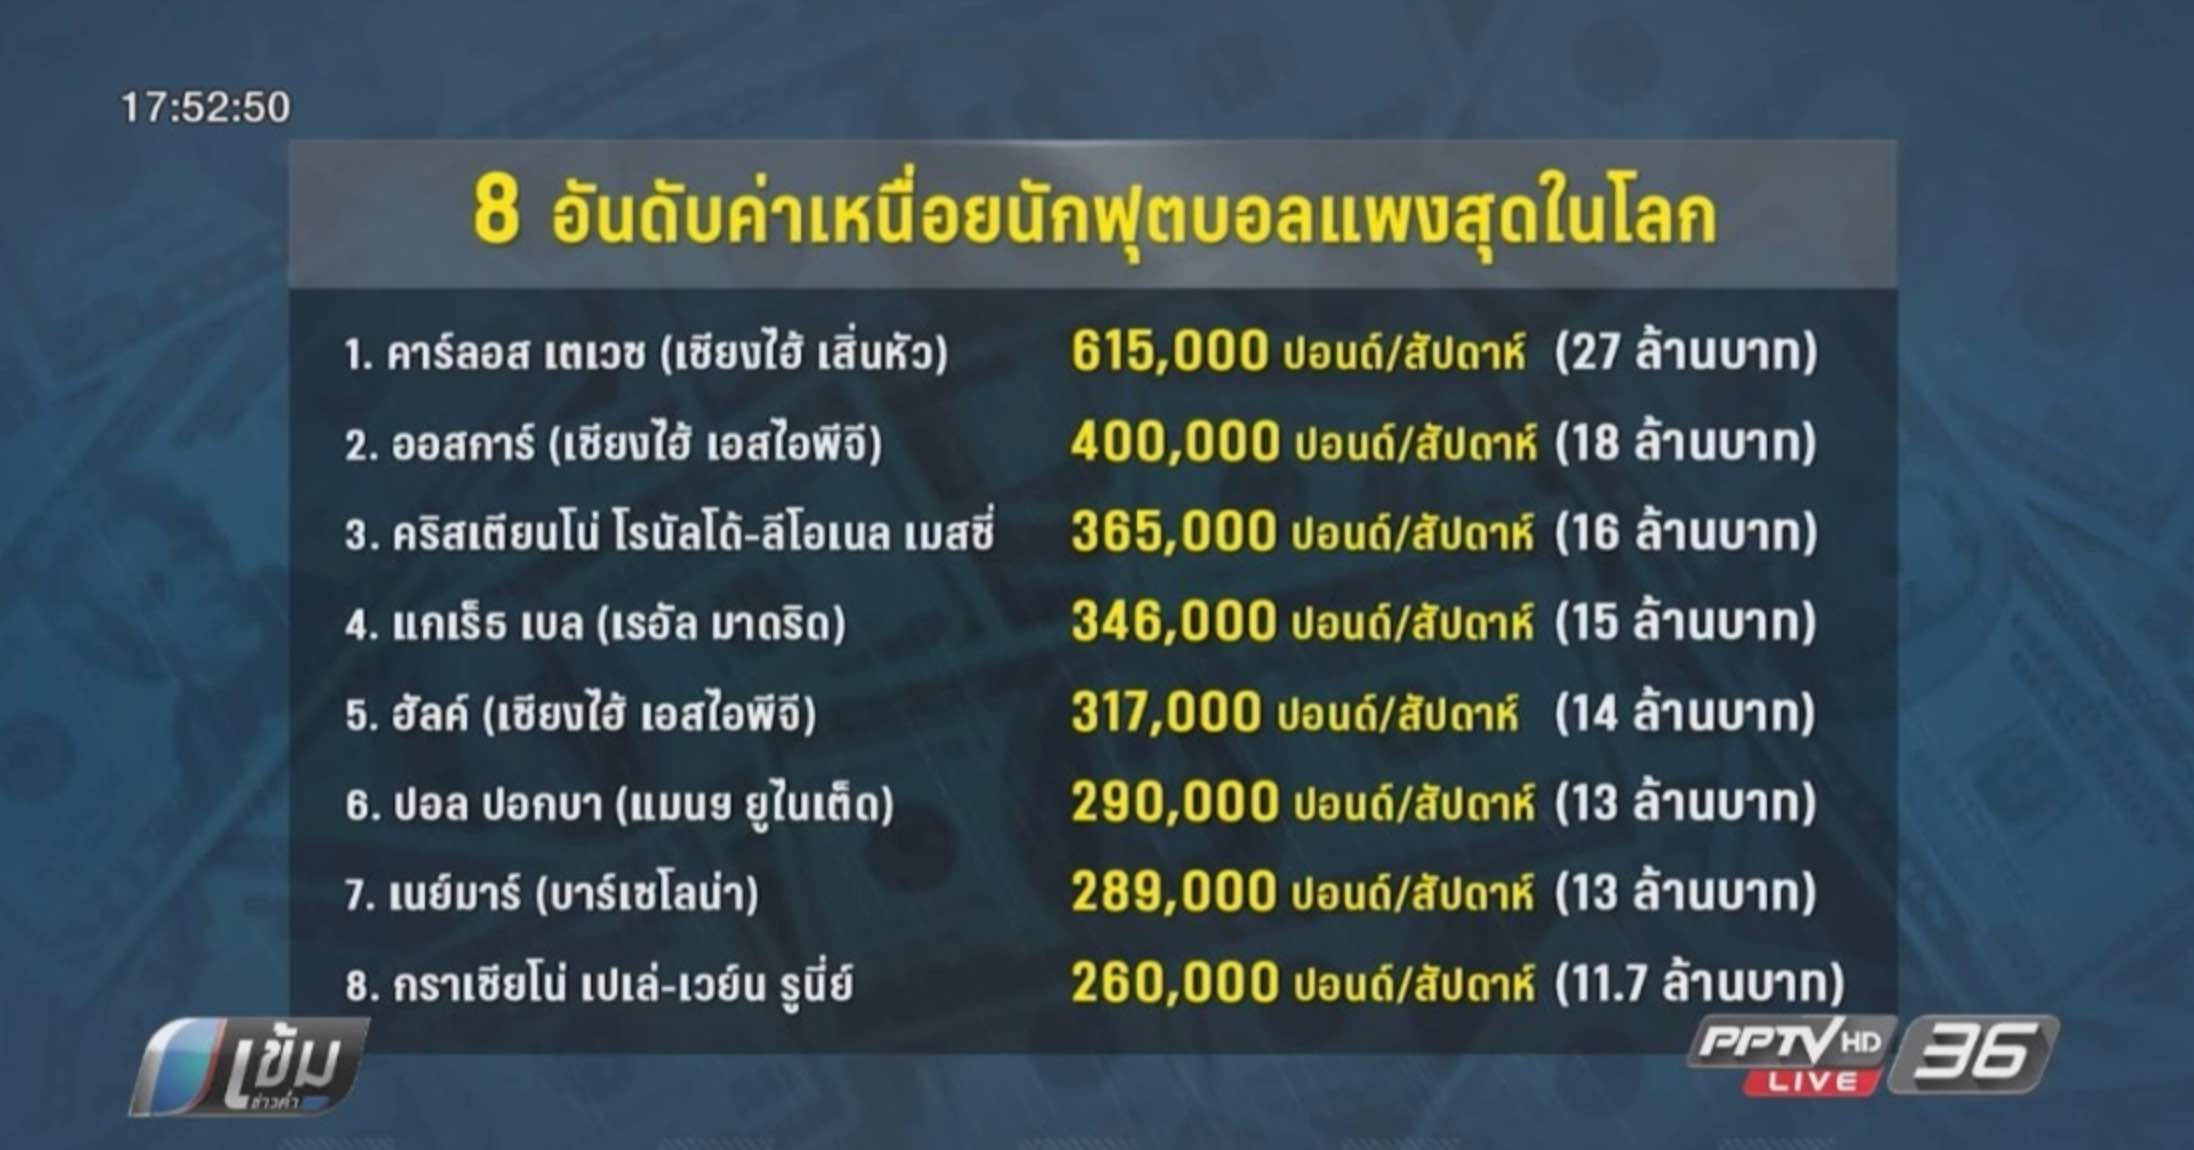 ค่าเหนื่อยนักเตะไทย 2567 อัพเดทตารางเงินเดือนล่าสุด